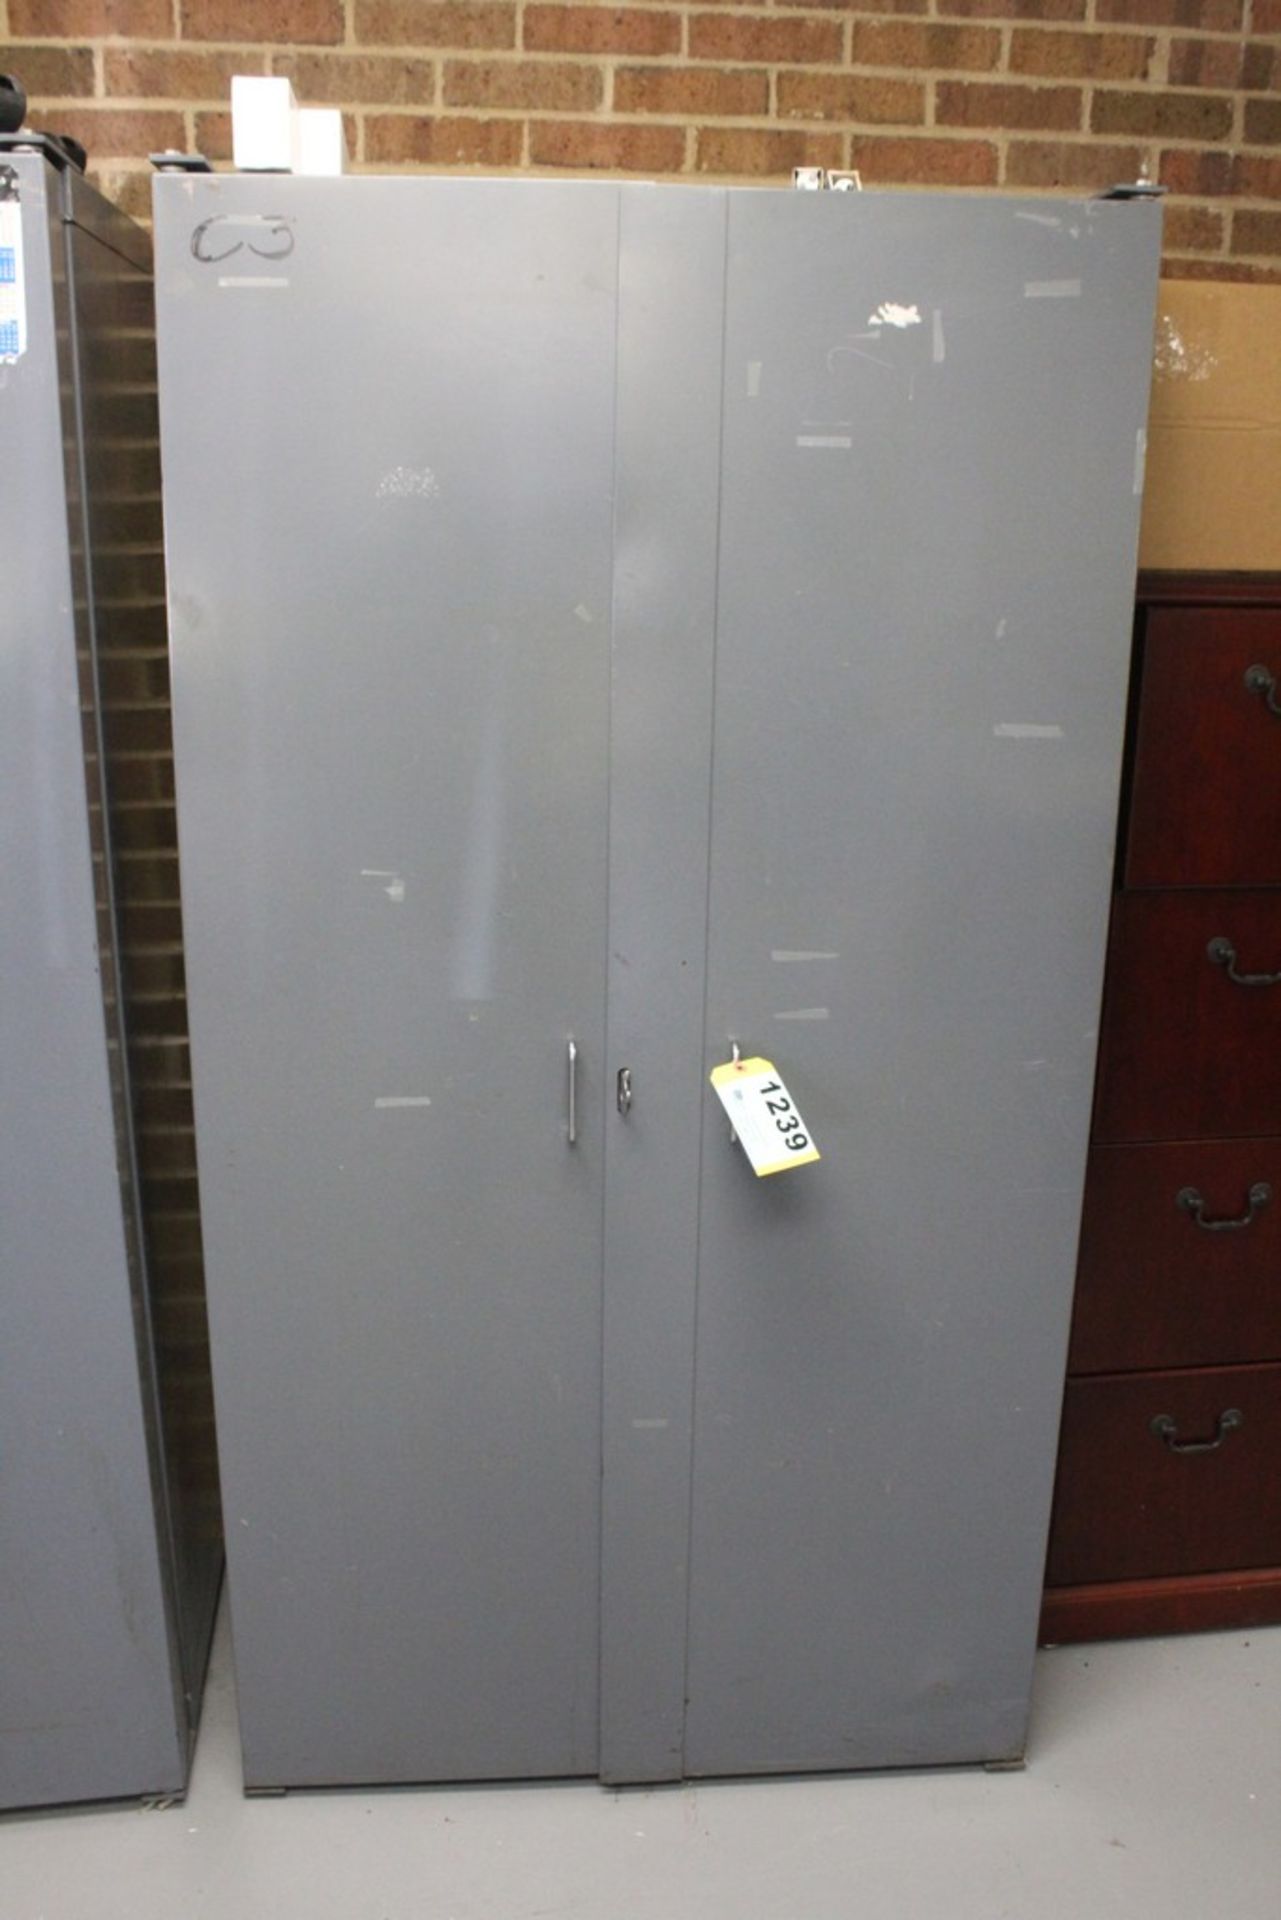 TWO DOOR STEEL BIN CABINET 38" X 24" X 72" WITH CONTENTS